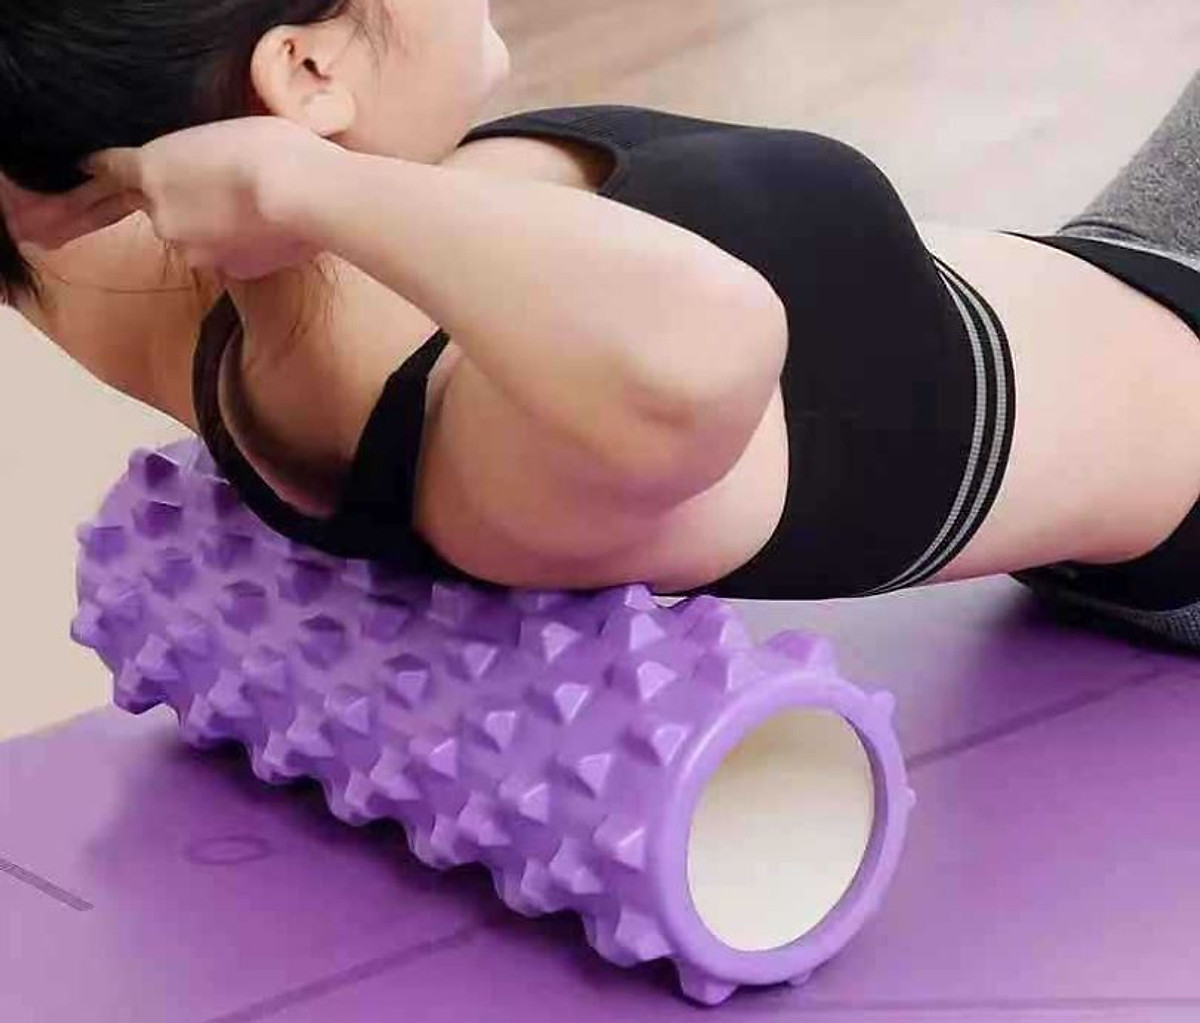 Foam Roller - Con lăn Matxa tập Gym, Yoga, giãn cơ - Hàng chính hãng dododios